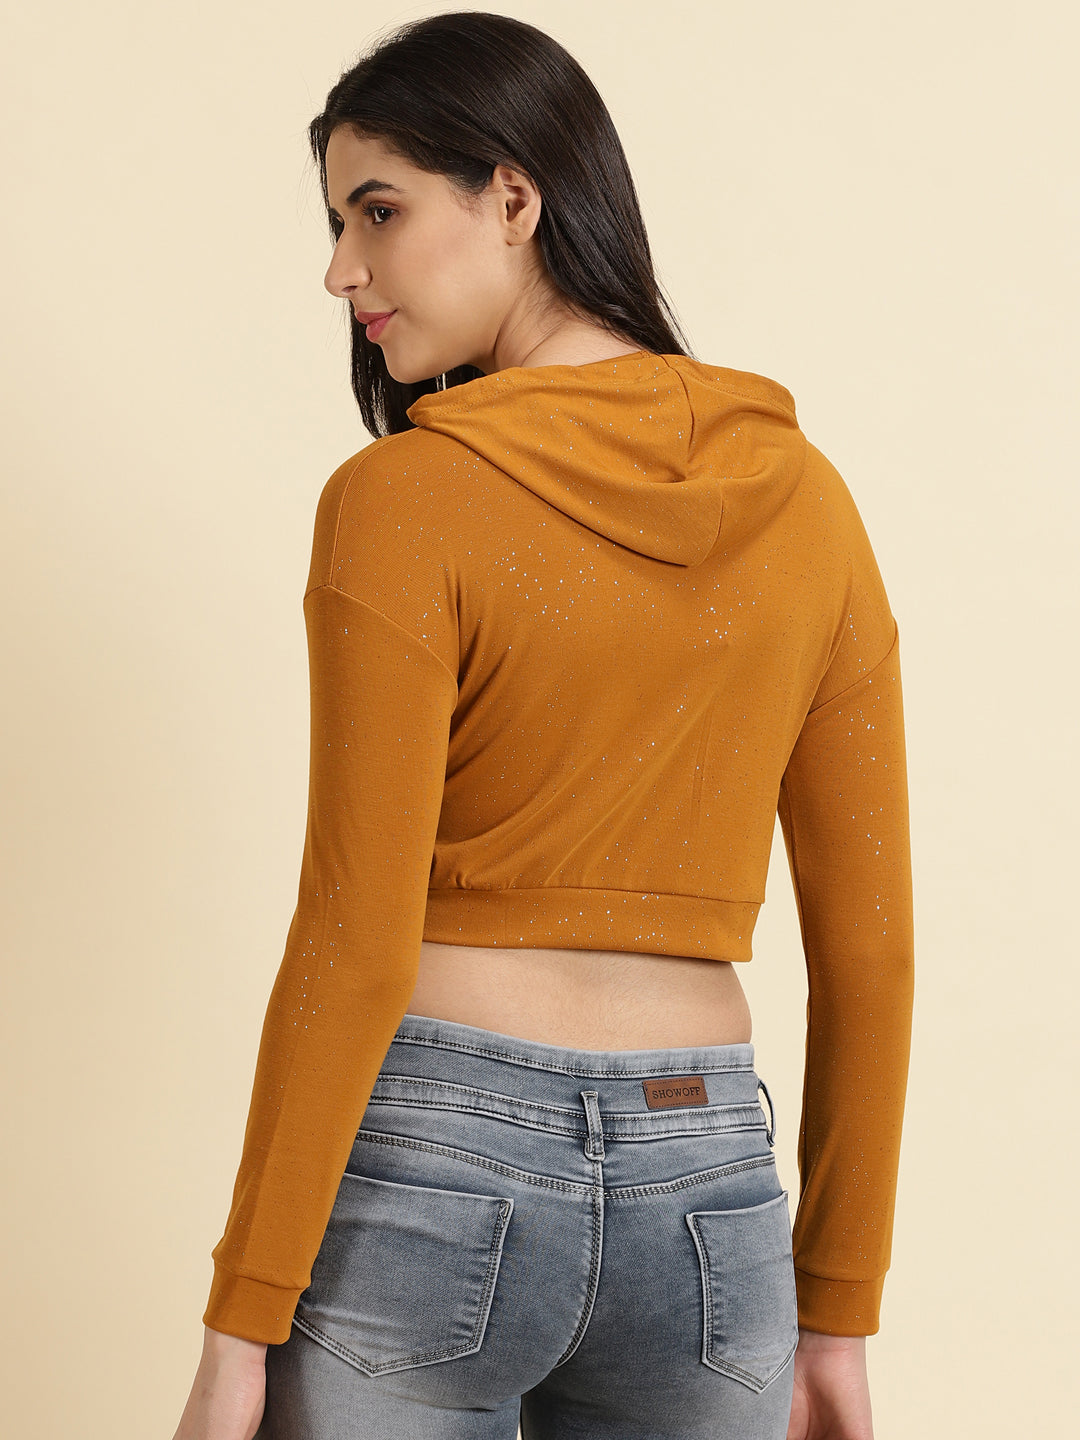 Women's Camel Brown Solid Sweatshirt